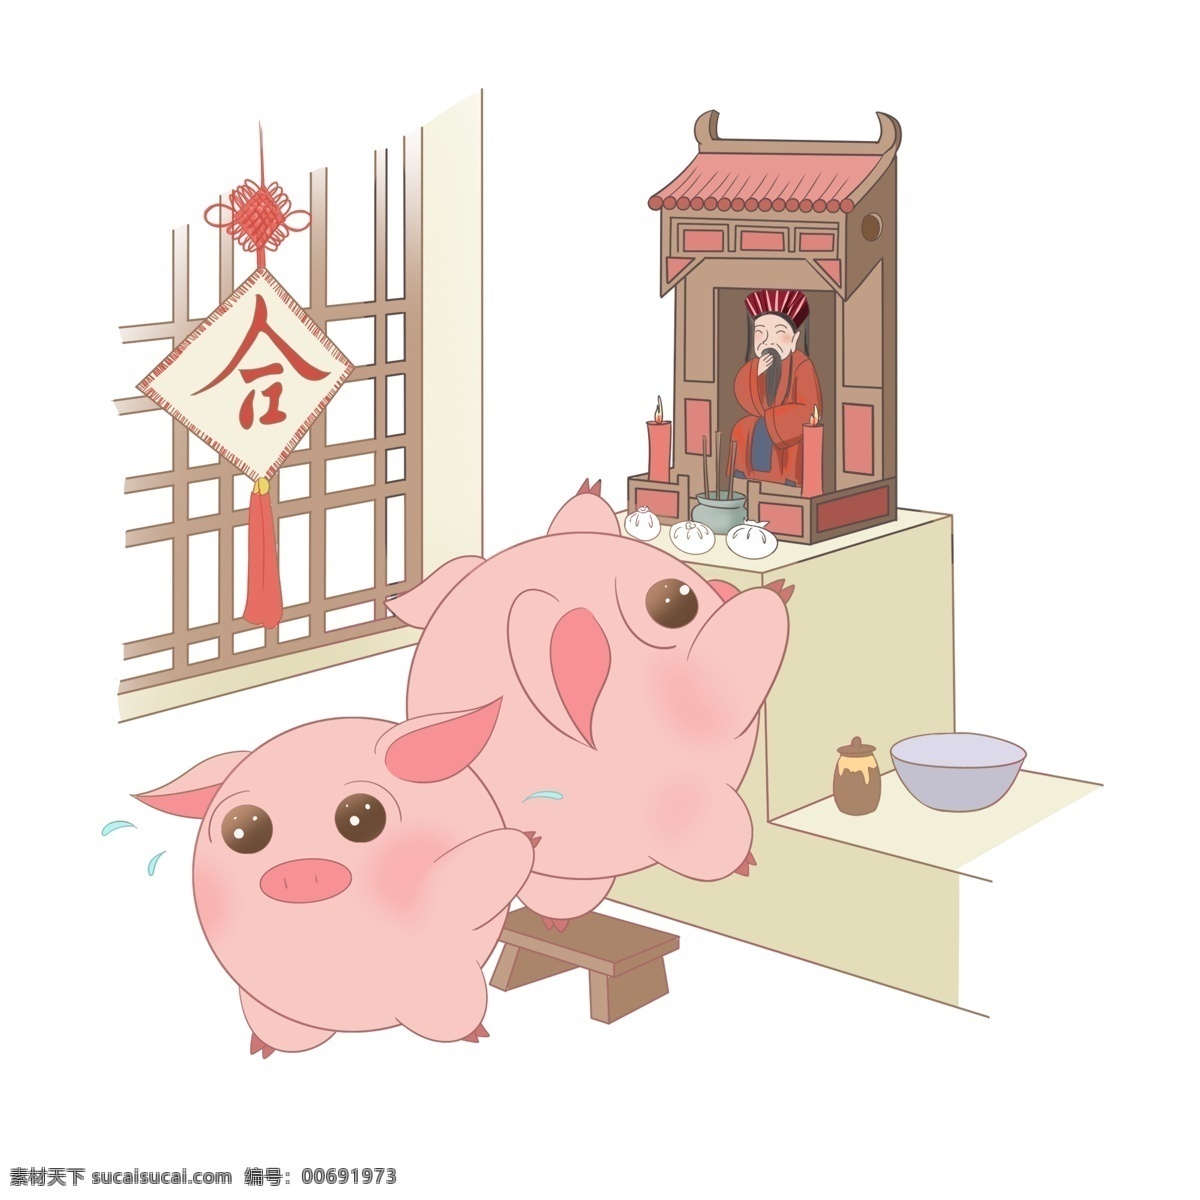 猪年 卡通 手绘 小 猪 敬神 中国 传统 习俗 卡通手绘 小猪敬神 小猪 卡通小猪 可爱小猪 新年到 猪年到 中国传统习俗